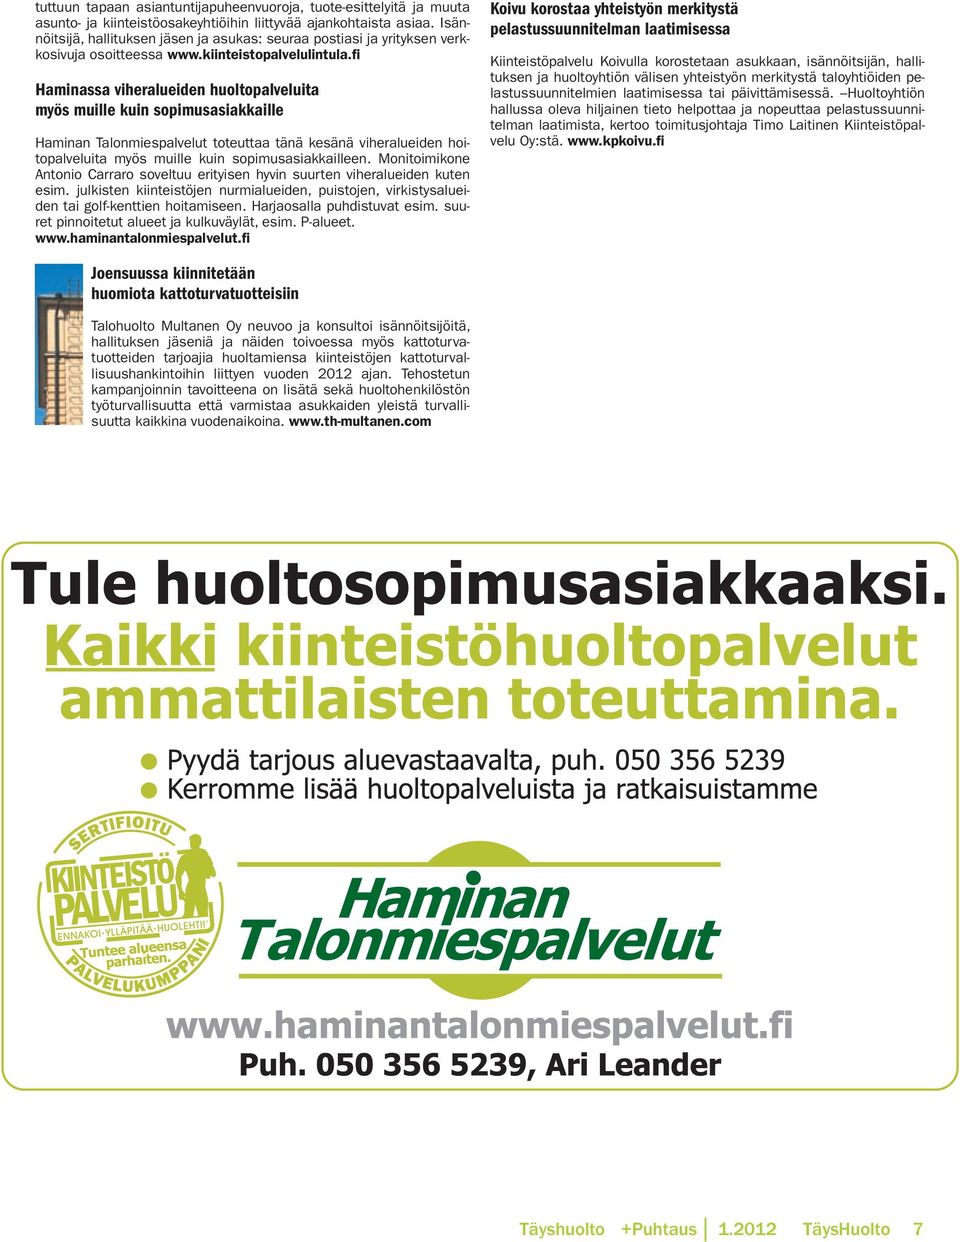 fi Haminassa viheralueiden huoltopalveluita myös muille kuin sopimusasiakkaille Haminan talonmiespalvelut toteuttaa tänä kesänä viheralueiden hoitopalveluita myös muille kuin sopimusasiakkailleen.